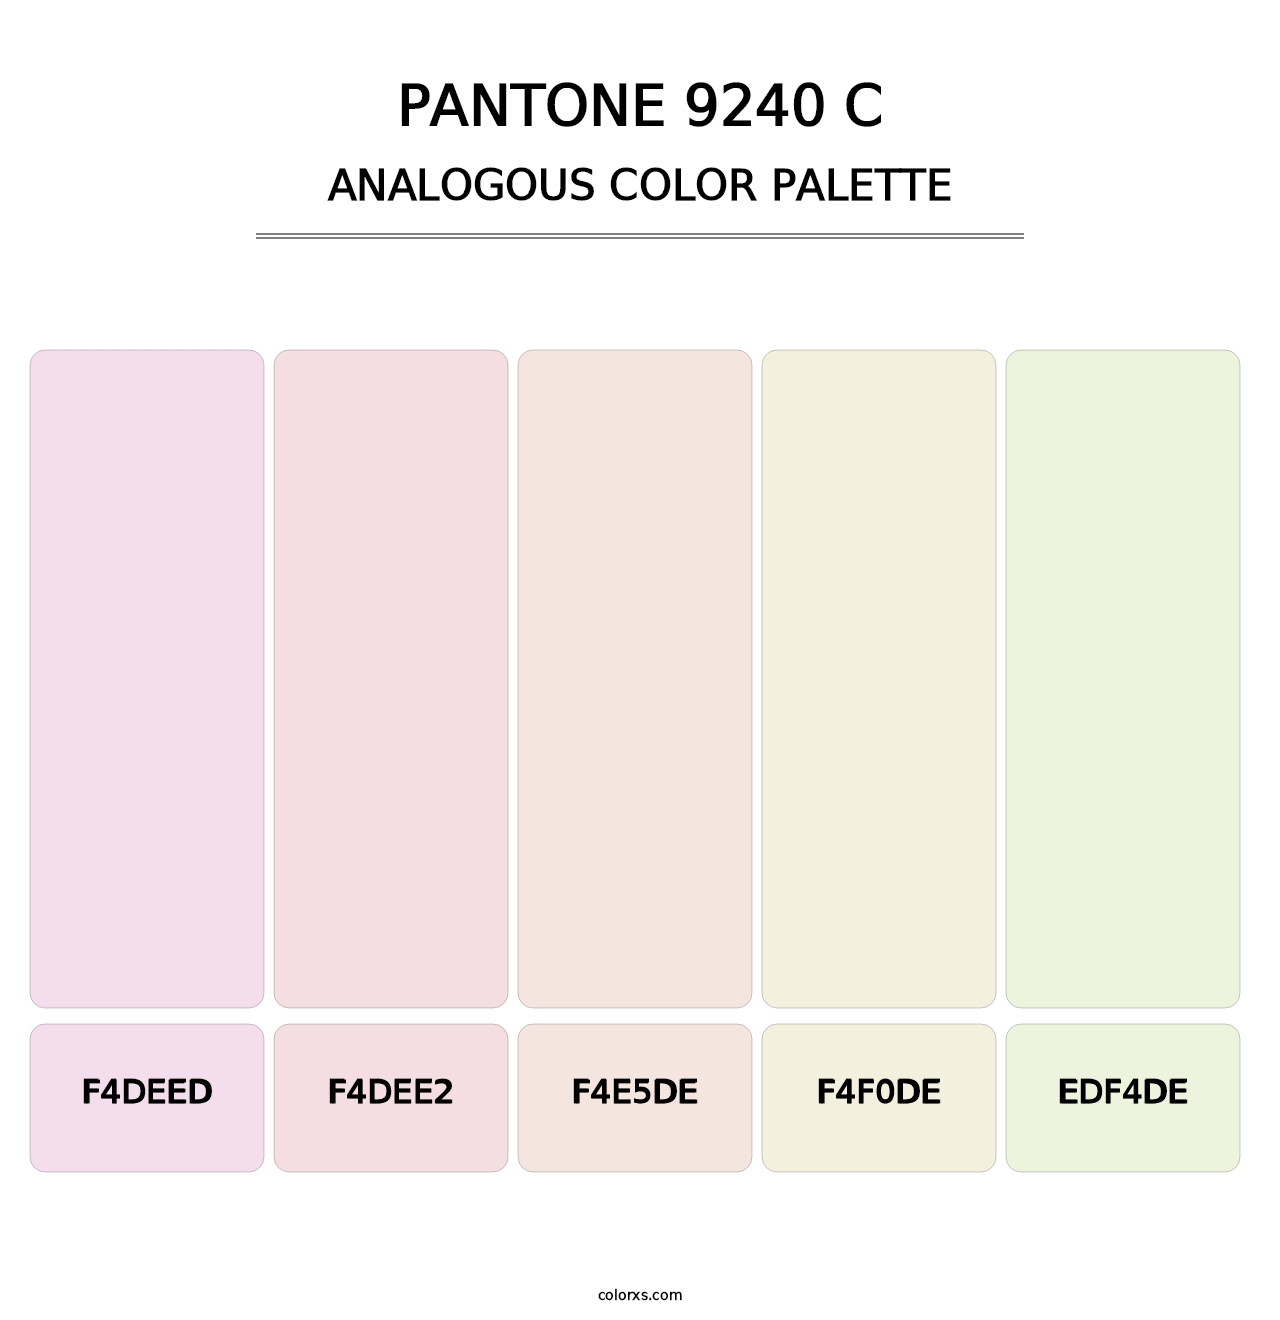 PANTONE 9240 C - Analogous Color Palette